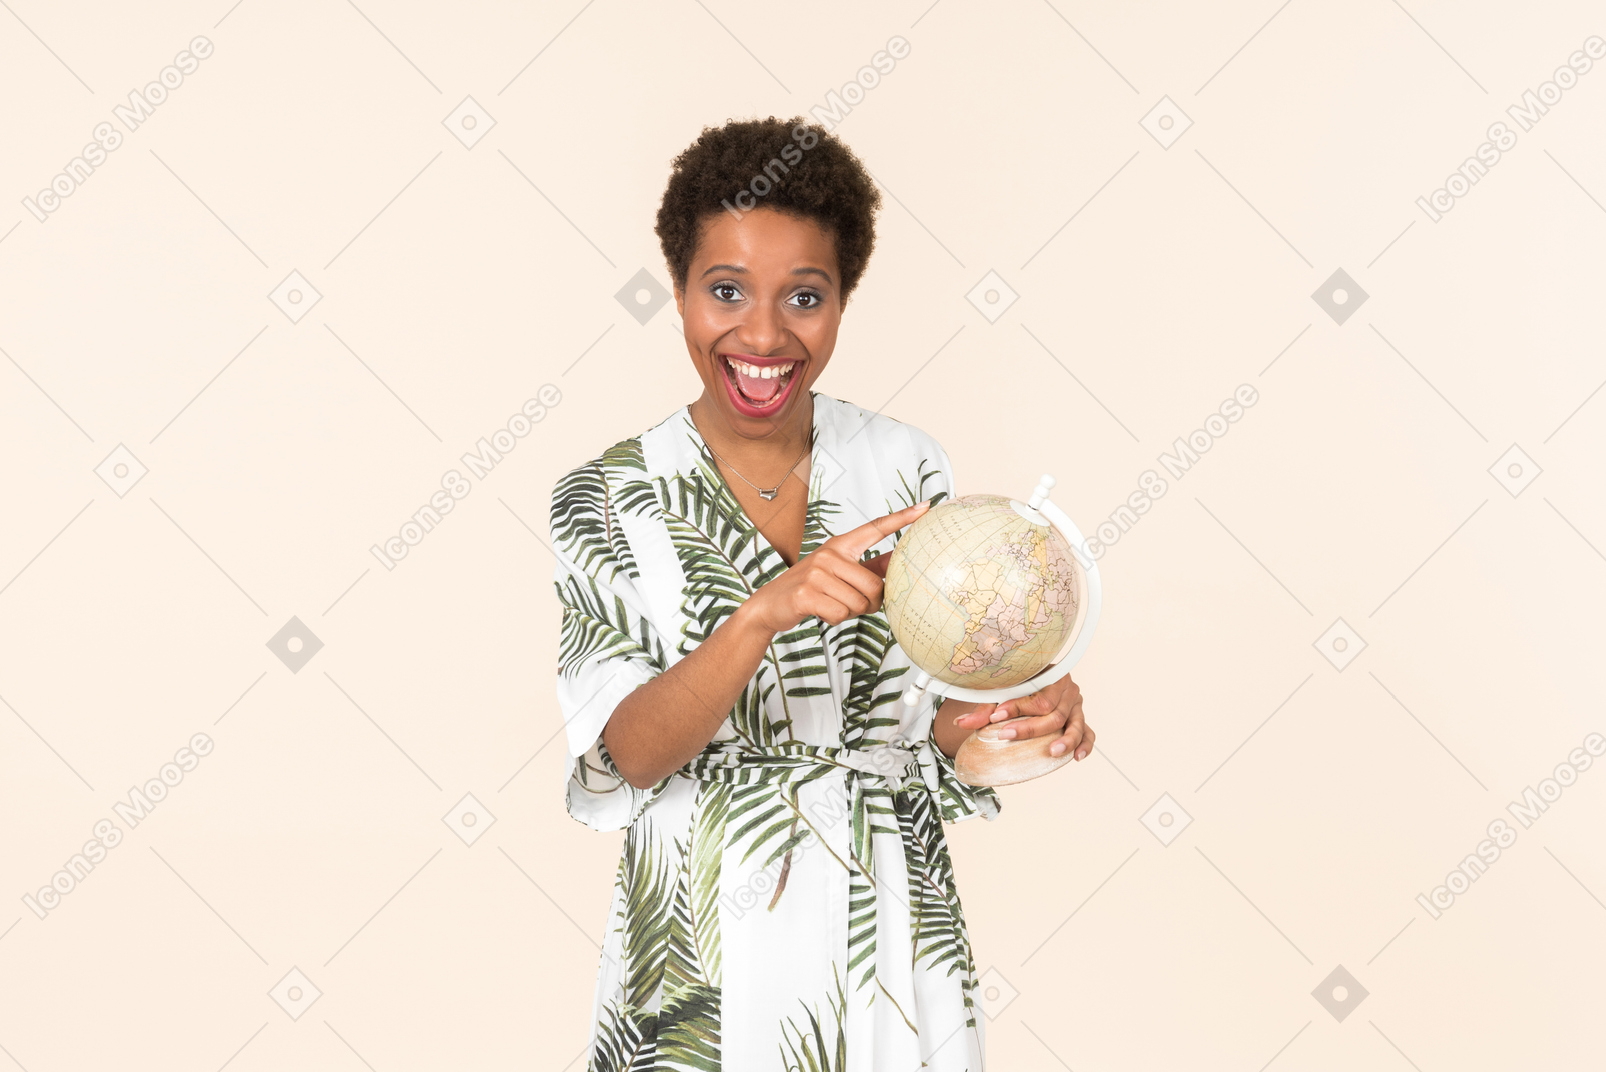 Femme aux cheveux courts noire vêtue d'une robe blanche et verte, debout avec un globe à la main